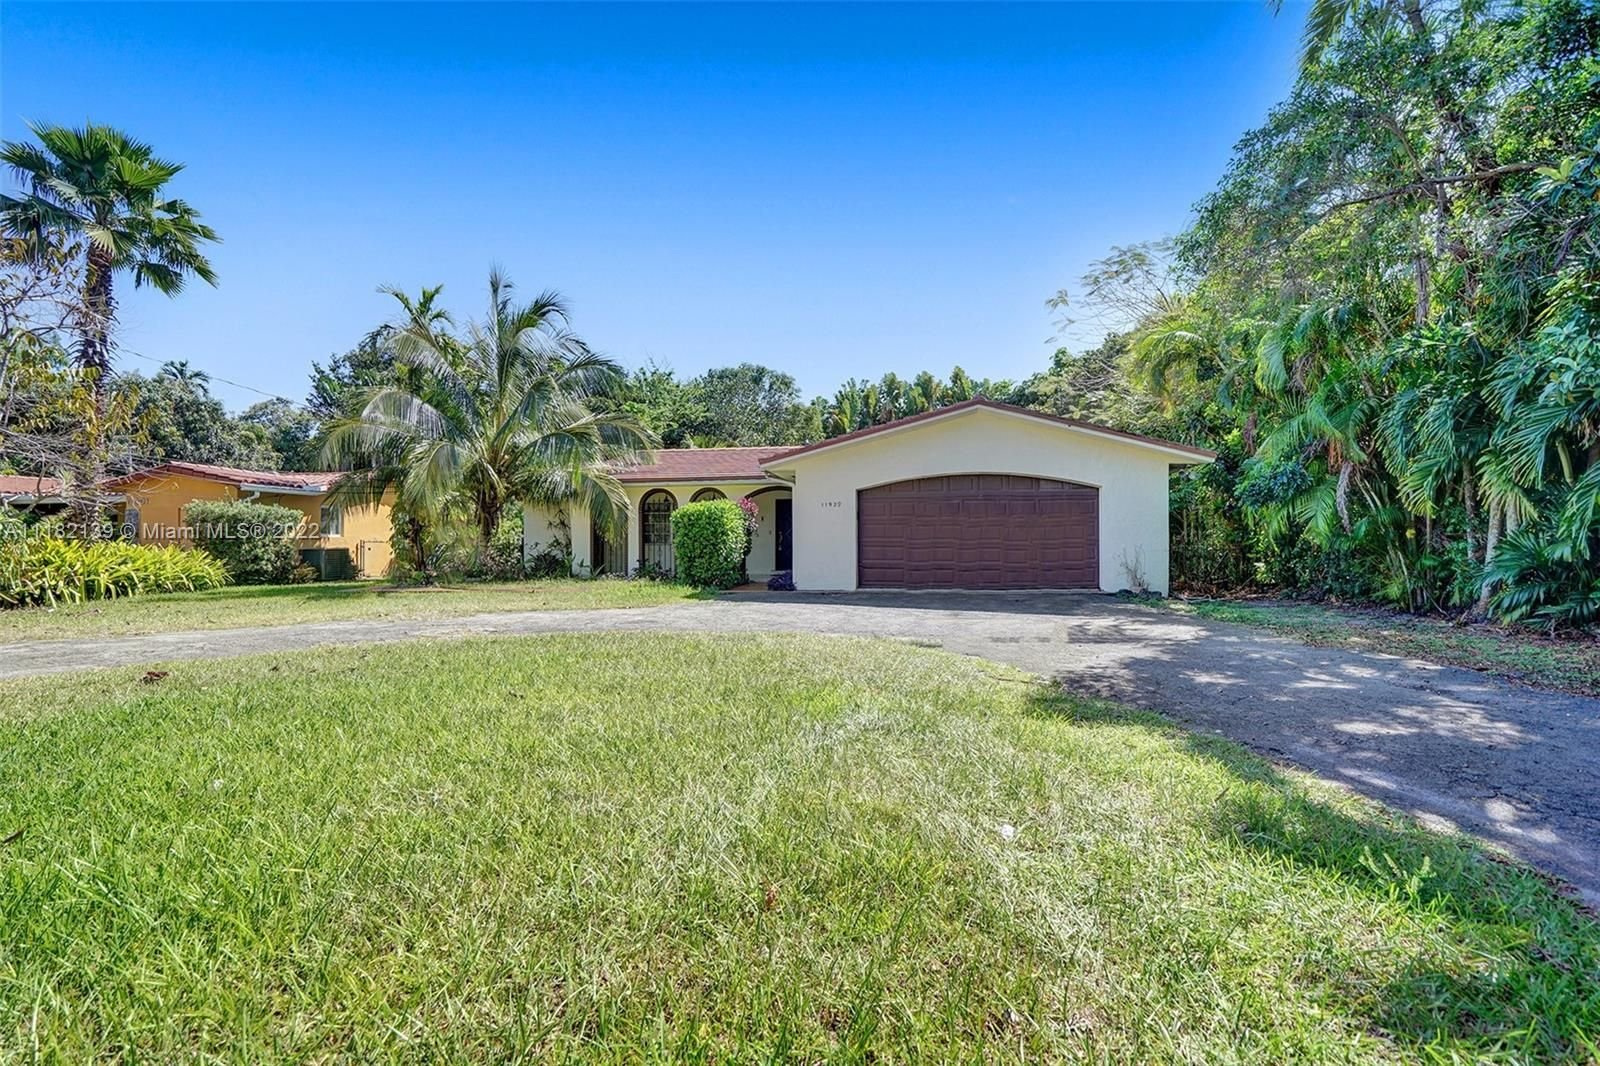 Real estate property located at 11929 Ne 6th Ave., Miami-Dade County, North Miami, FL